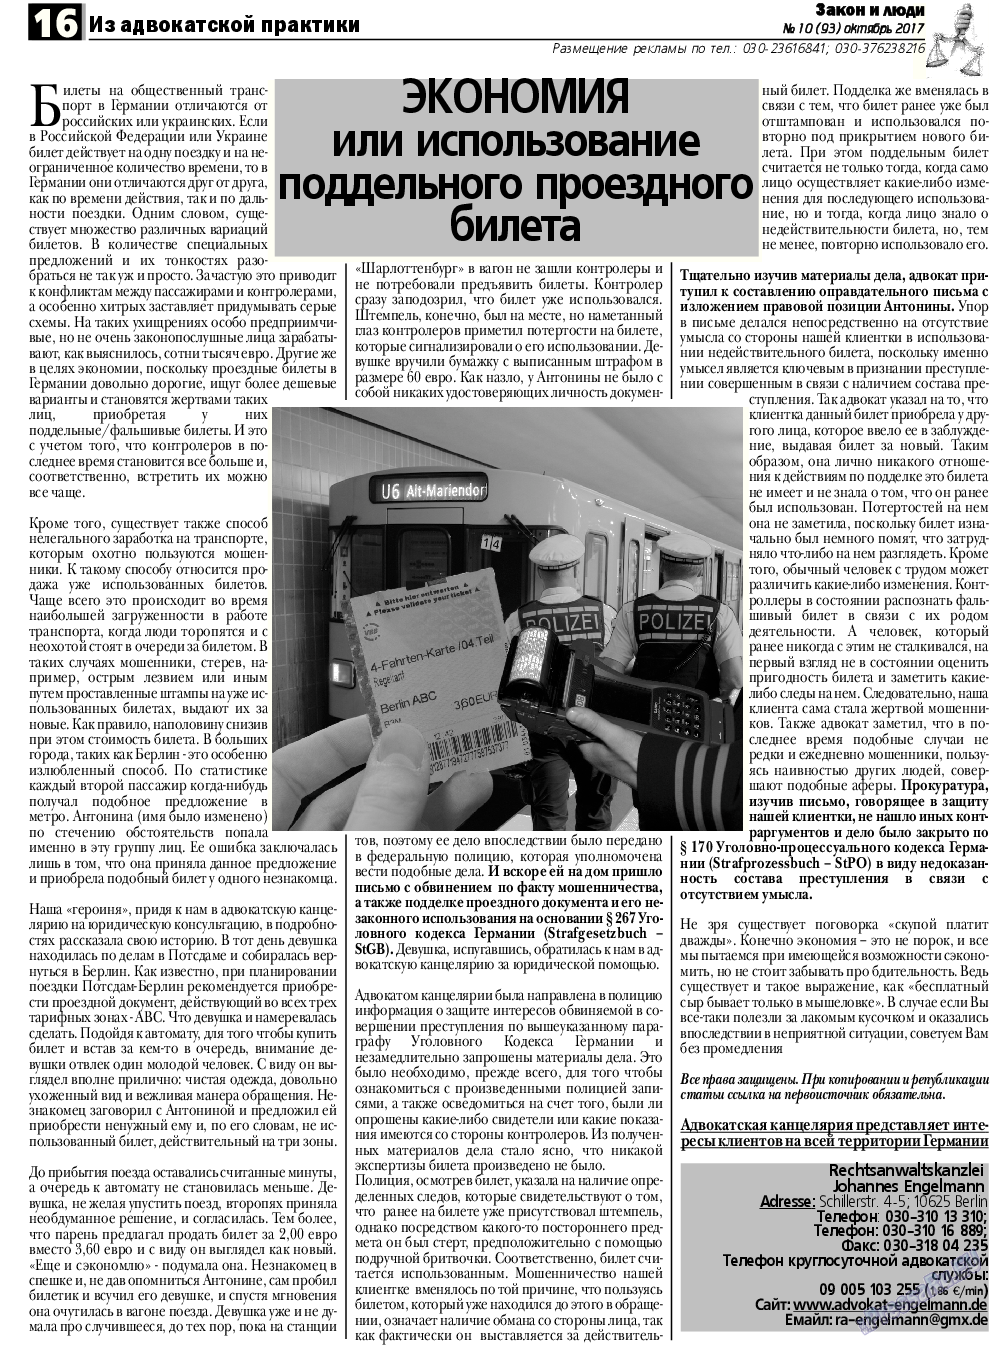 Закон и люди, газета. 2017 №10 стр.16